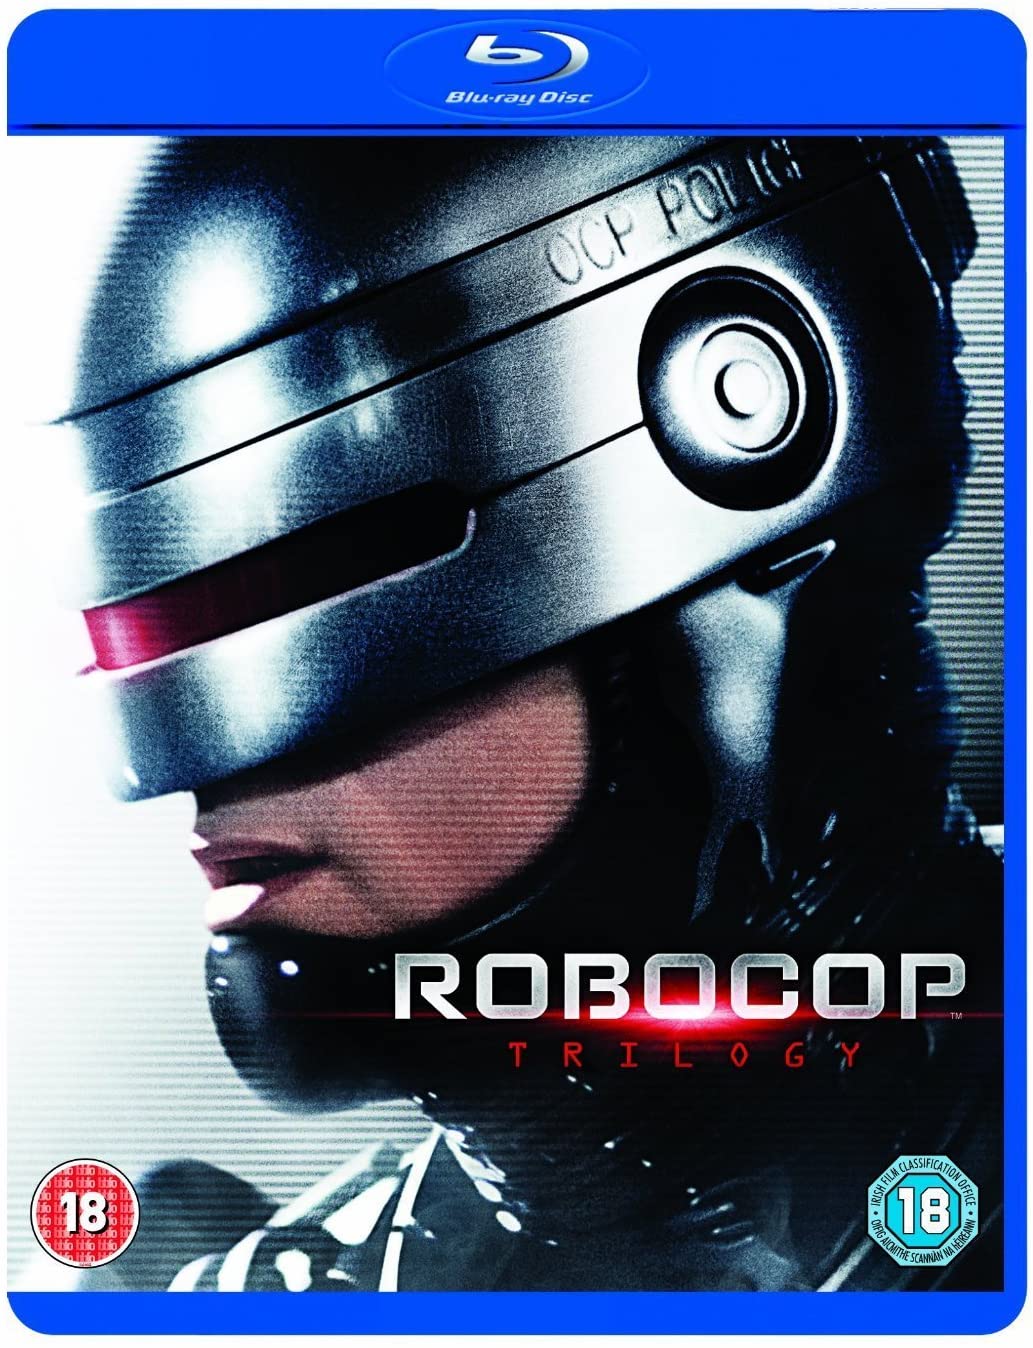 Trilogía de Robocop [Remastered] [Blu-ray] [Region Free]